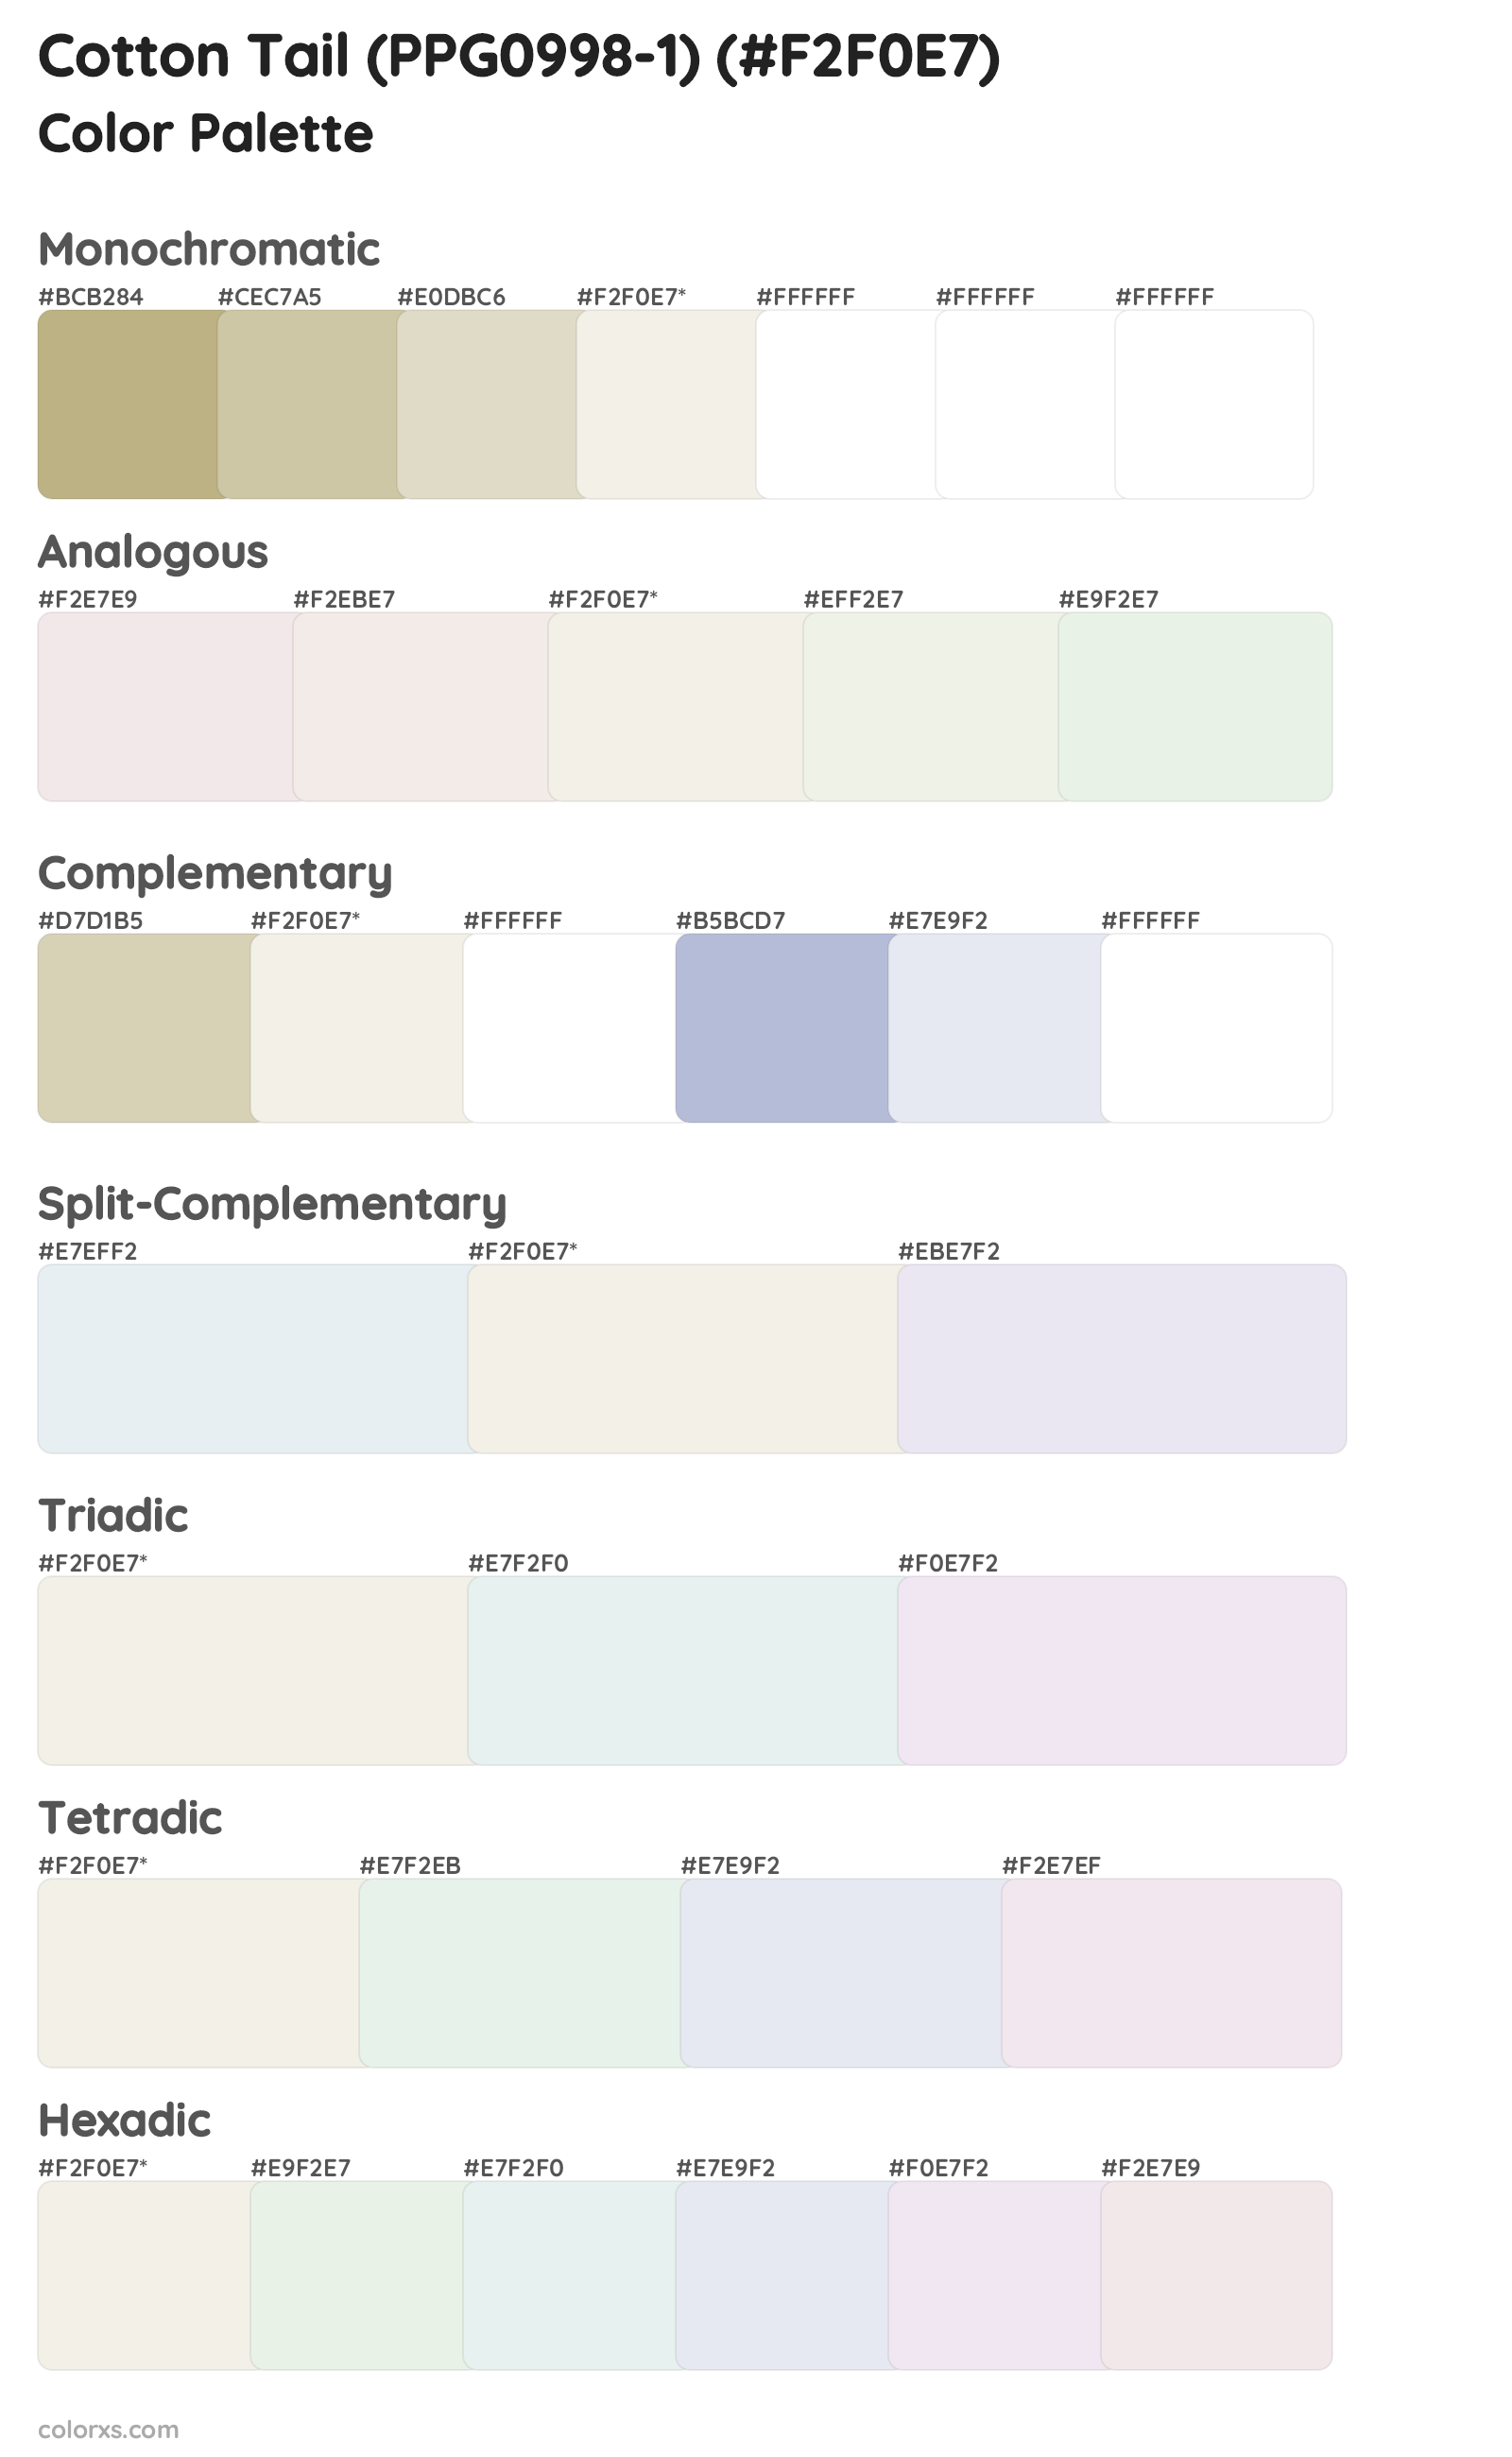 Cotton Tail (PPG0998-1) Color Scheme Palettes